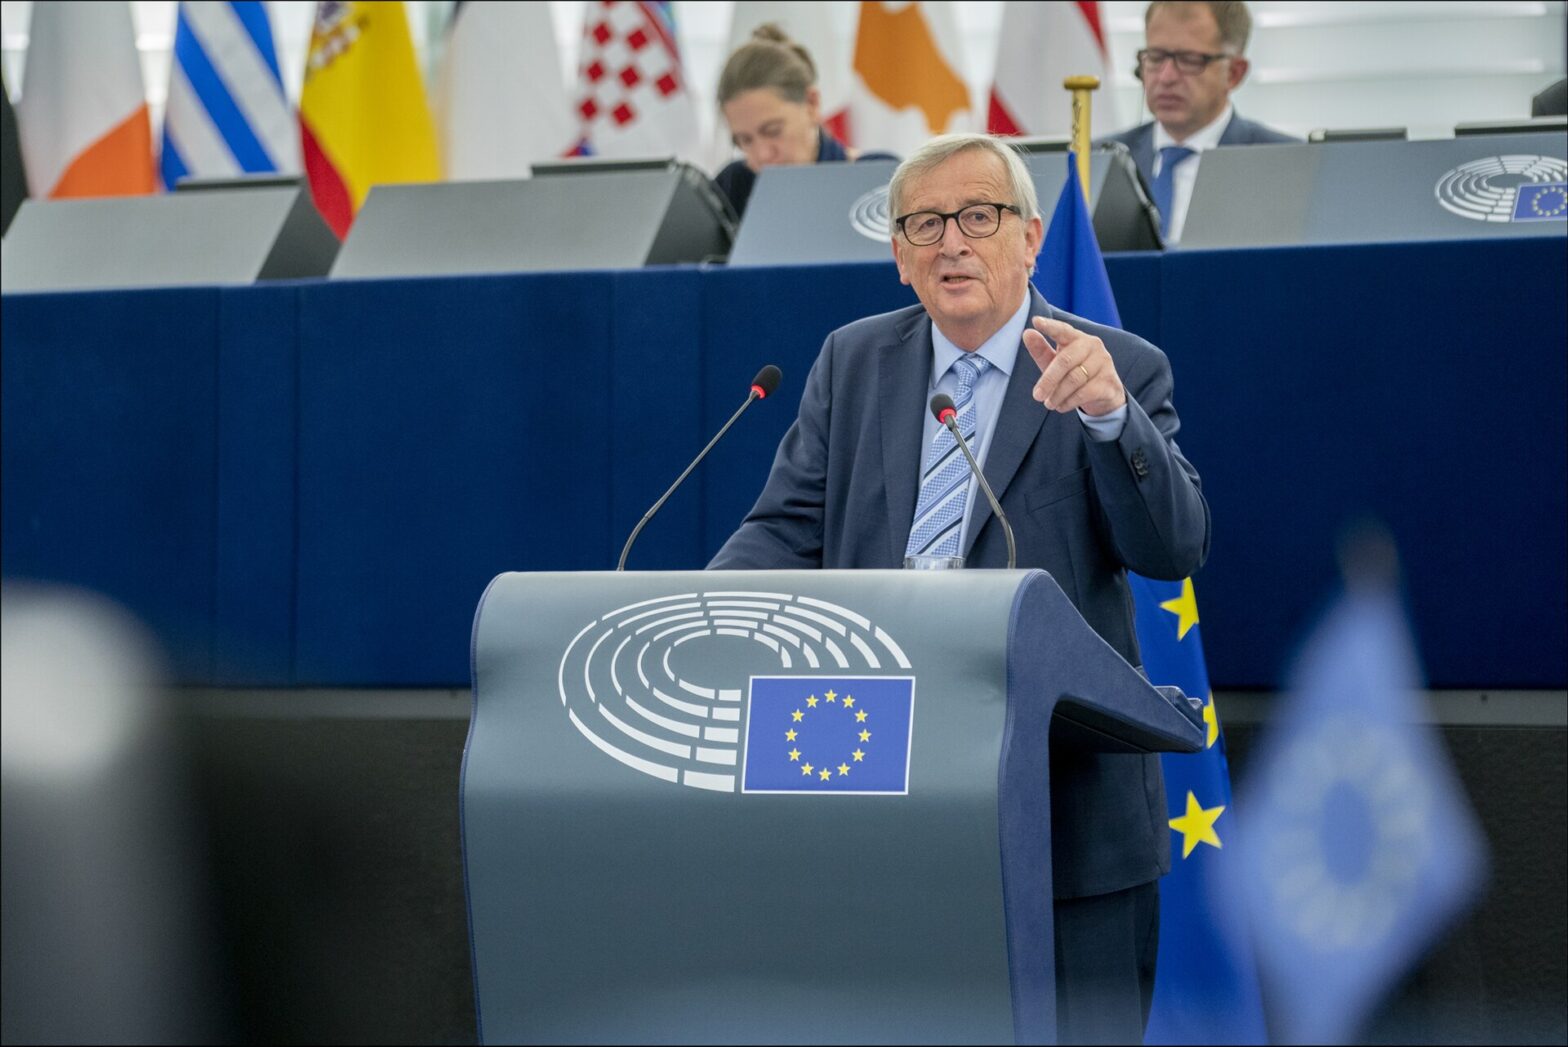 Jean-Claude Juncker im Oktober 2019 bei einer Diskussion im Europäischen Parlament. Bis Ende November 2019 war Juncker Präsident der Europäischen Kommission. Foto: Von European Parliament from EU - MEPs assess Juncker Commission, CC BY 2.0, https://commons.wikimedia.org/w/index.php?curid=83295073